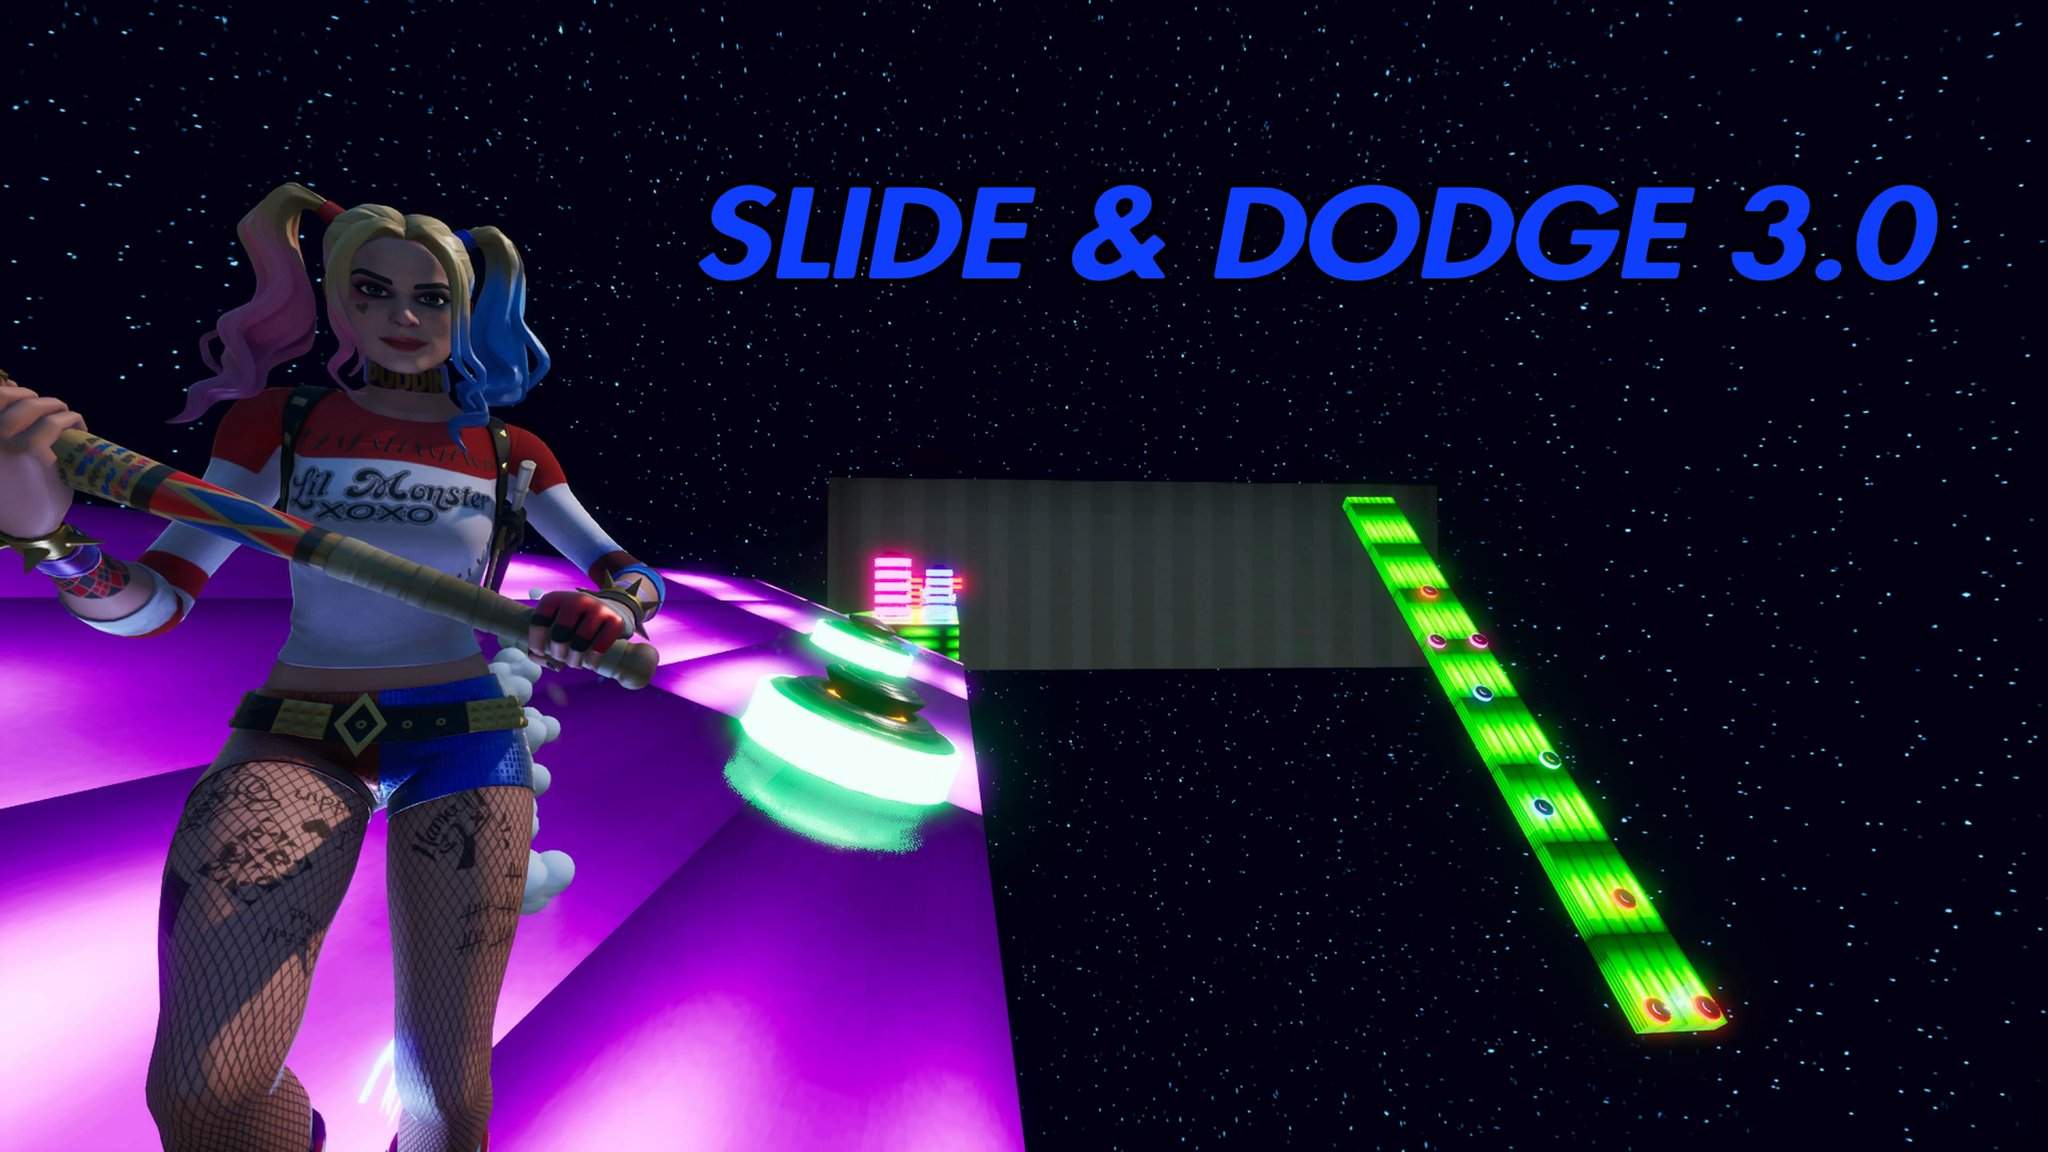 SLIDE & DODGE 3.0